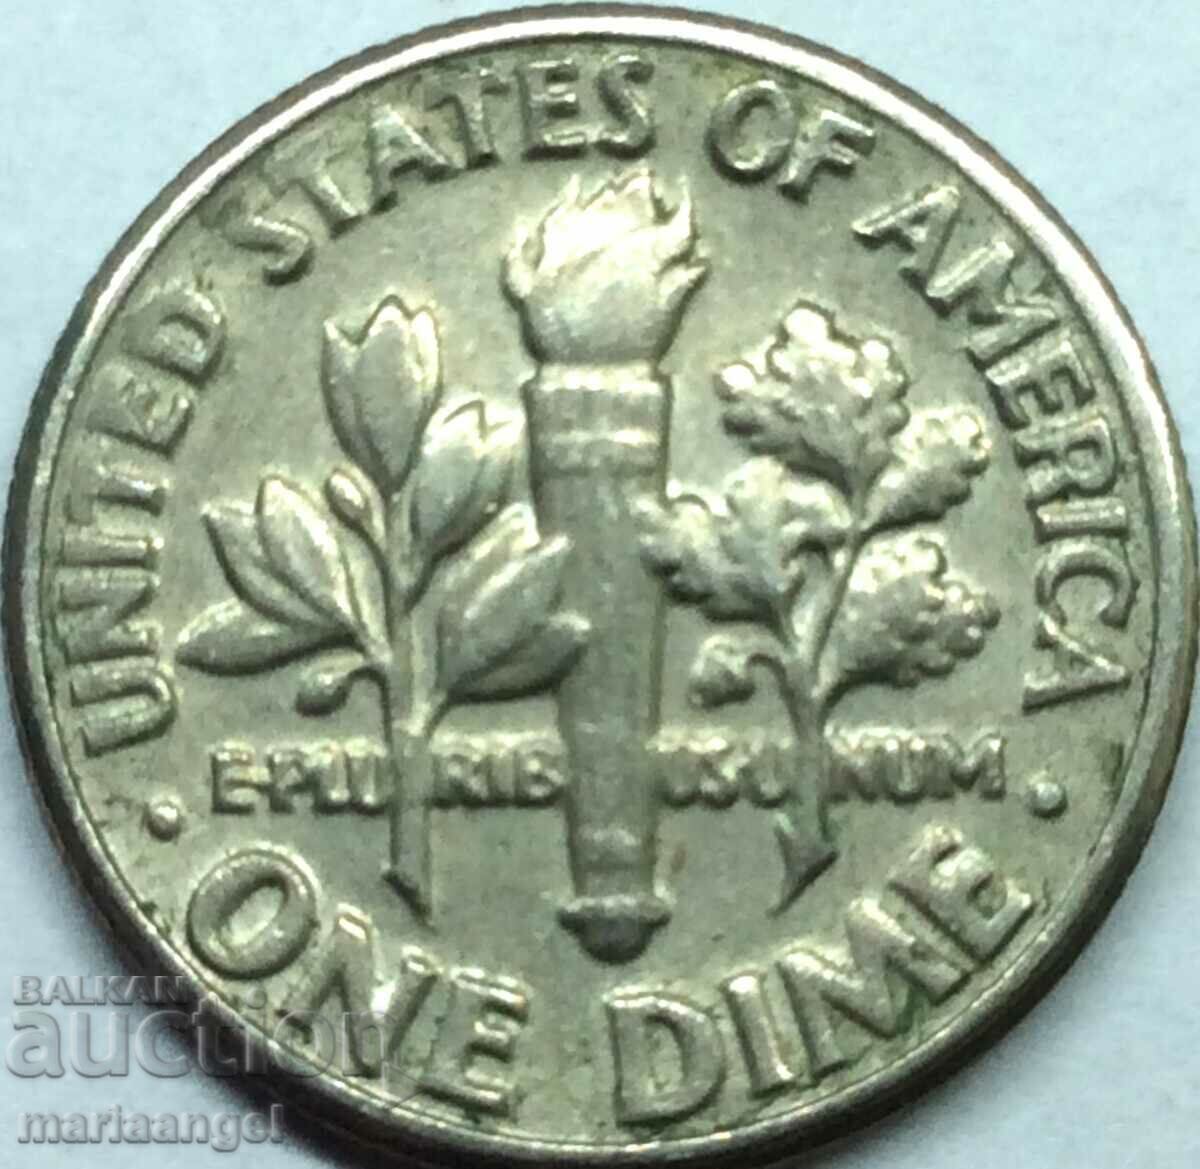 SUA 1 dime 1984 10 cenți